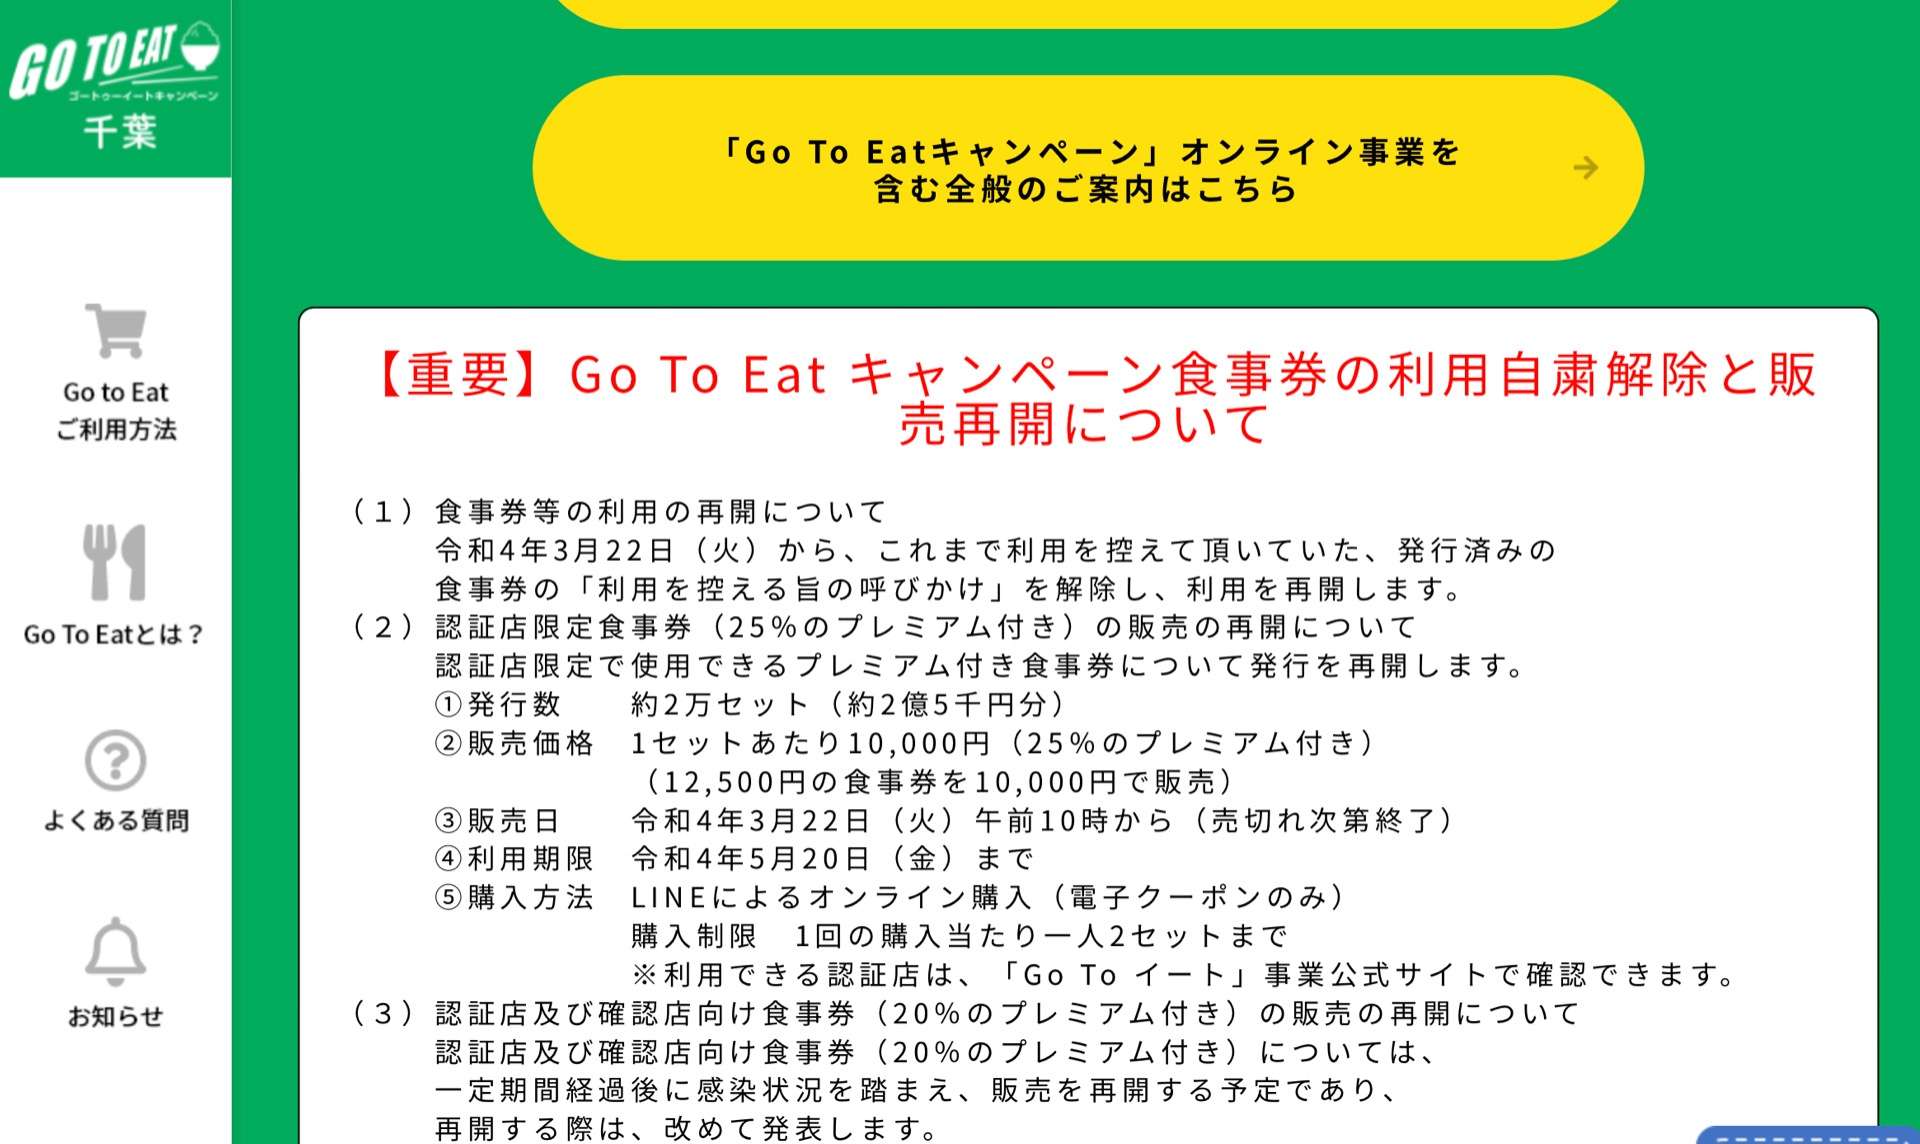 千葉県 Go To Eat キャンペーン食事券の販売が再開！